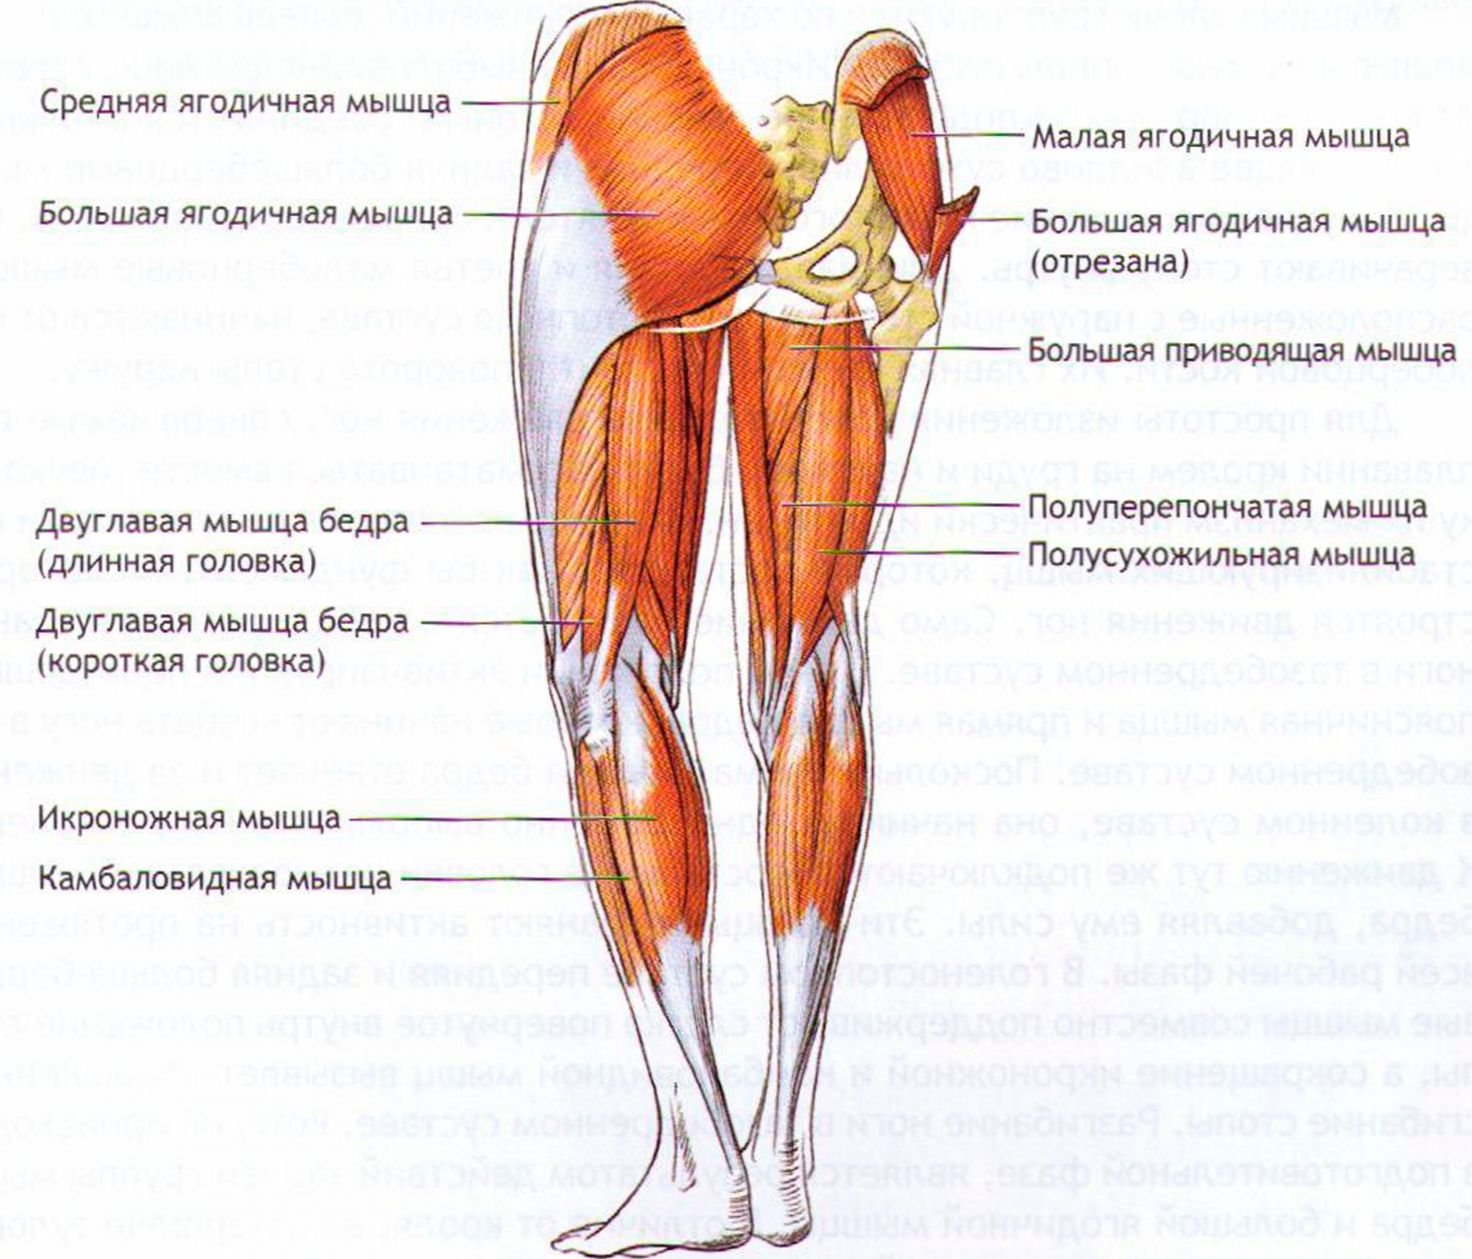 Что означает ляшки. Мышцы задней поверхности бедра анатомия. Мышцы бедер и ягодиц анатомия. Анатомия задних мышц ног. Мышцы задней поверхности бедра и голени.